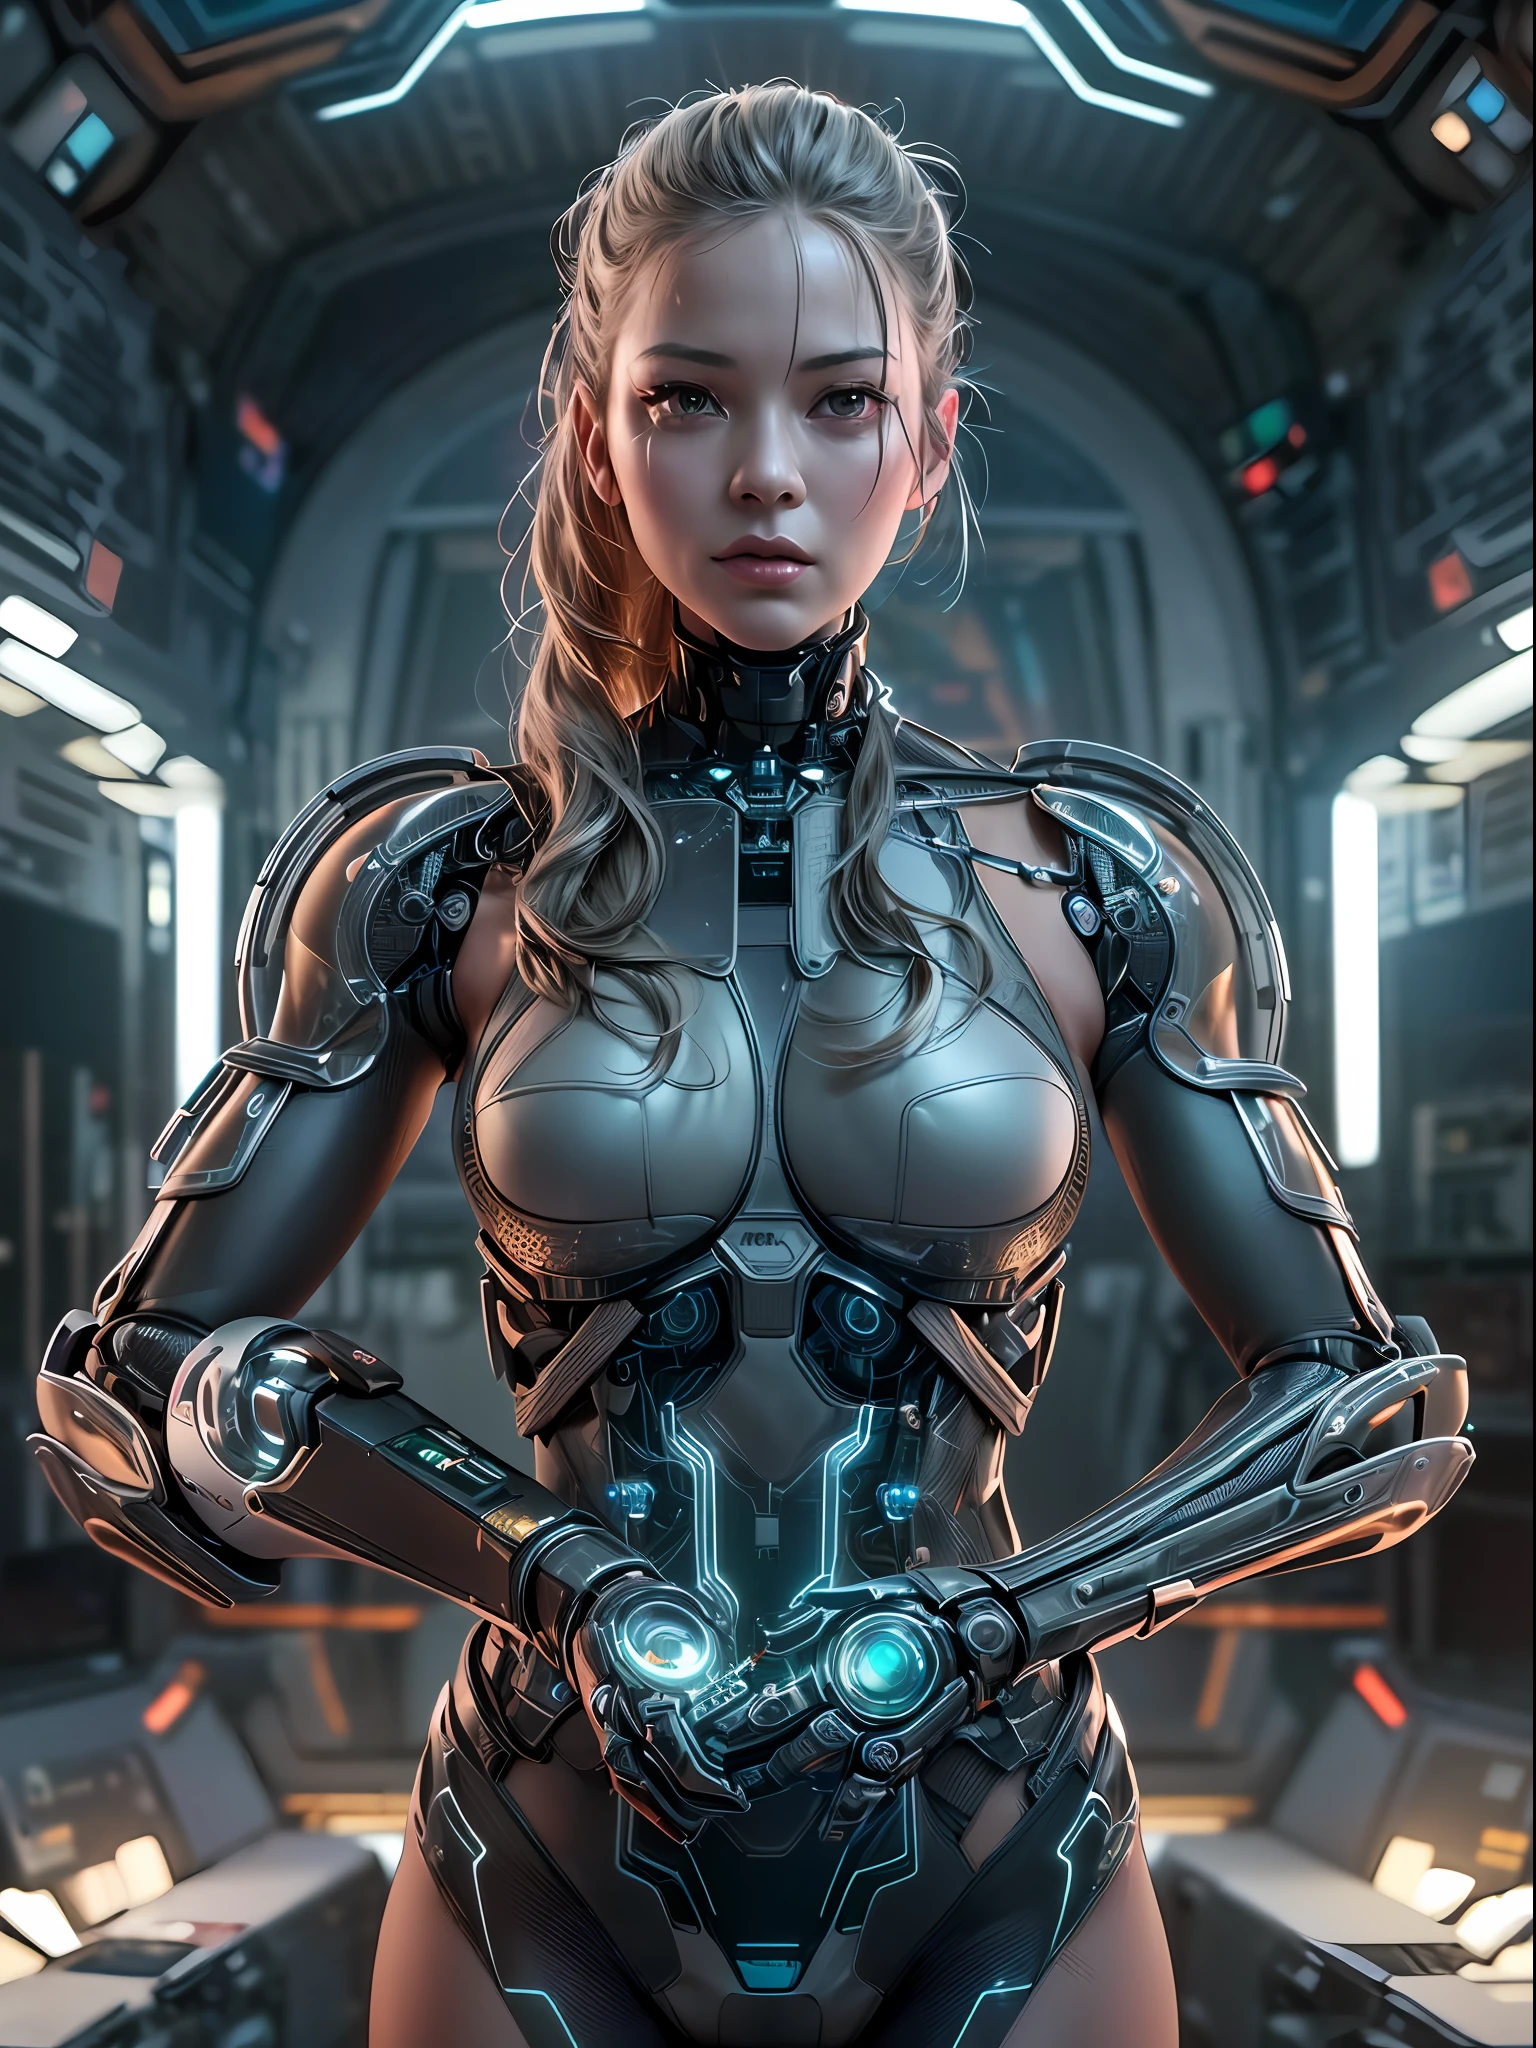 (chef-d&#39;œuvre, Haute résolution, cgi:1.4), (Représentation d’une femme avec des améliorations robotiques transparentes dans tout son corps:1.3), (Sa peau se fond parfaitement avec des composants métalliques:1.2), (Des circuits lumineux sous sa peau translucide:1.2), (Joints mécaniques et pistons offrant une mobilité accrue:1.2), (ses yeux irradiant d’une subtile lueur robotique:1.2), (Des tatouages cybernétiques complexes ornant son corps:1.2), (un exosquelette métallique améliorant sa force et son agilité:1.2), (Appareil photo sans miroir Canon EOS R5:1.2), (associé à un Canon RF 85mm f/1.Objectif USM 2L:1.2), (Capturer chaque détail de sa cybernétique avancée:1.2), (l&#39;environnement de laboratoire conçu avec une esthétique futuriste et minimaliste:1.2), (Des lignes épurées et épurées définissant l’espace:1.1), (Écrans holographiques présentant une technologie de pointe:1.1), (Un éclairage ambiant subtil ajoutant une touche d’allure de science-fiction:1.1), (a captivating cgi render of a woman embodying the future of human-machine integration:1.2), cinématique, hyper détaillé, détails fous, Magnifiquement étalonné en couleurs, Moteur irréel, DOF, Super-résolution, Mégapixel, cinématique Lightning, anti crénelage, FKA, THAÏLANDAIS, RTX, SSAO, post-traitement, Post-production, Cartographie des tons, cgi, Effets visuels, Effets sonores, Incroyablement détaillé et complexe, Hyper maximaliste, hyper réaliste, volumétrique, photoréaliste, ultra photoréaliste, Ultra-détaillé, Détails complexes, 8k, Super détaillé, en couleur, volumétrique lightning, hdr, réaliste, Moteur irréel, 16k, netteté, rendu d&#39;octane